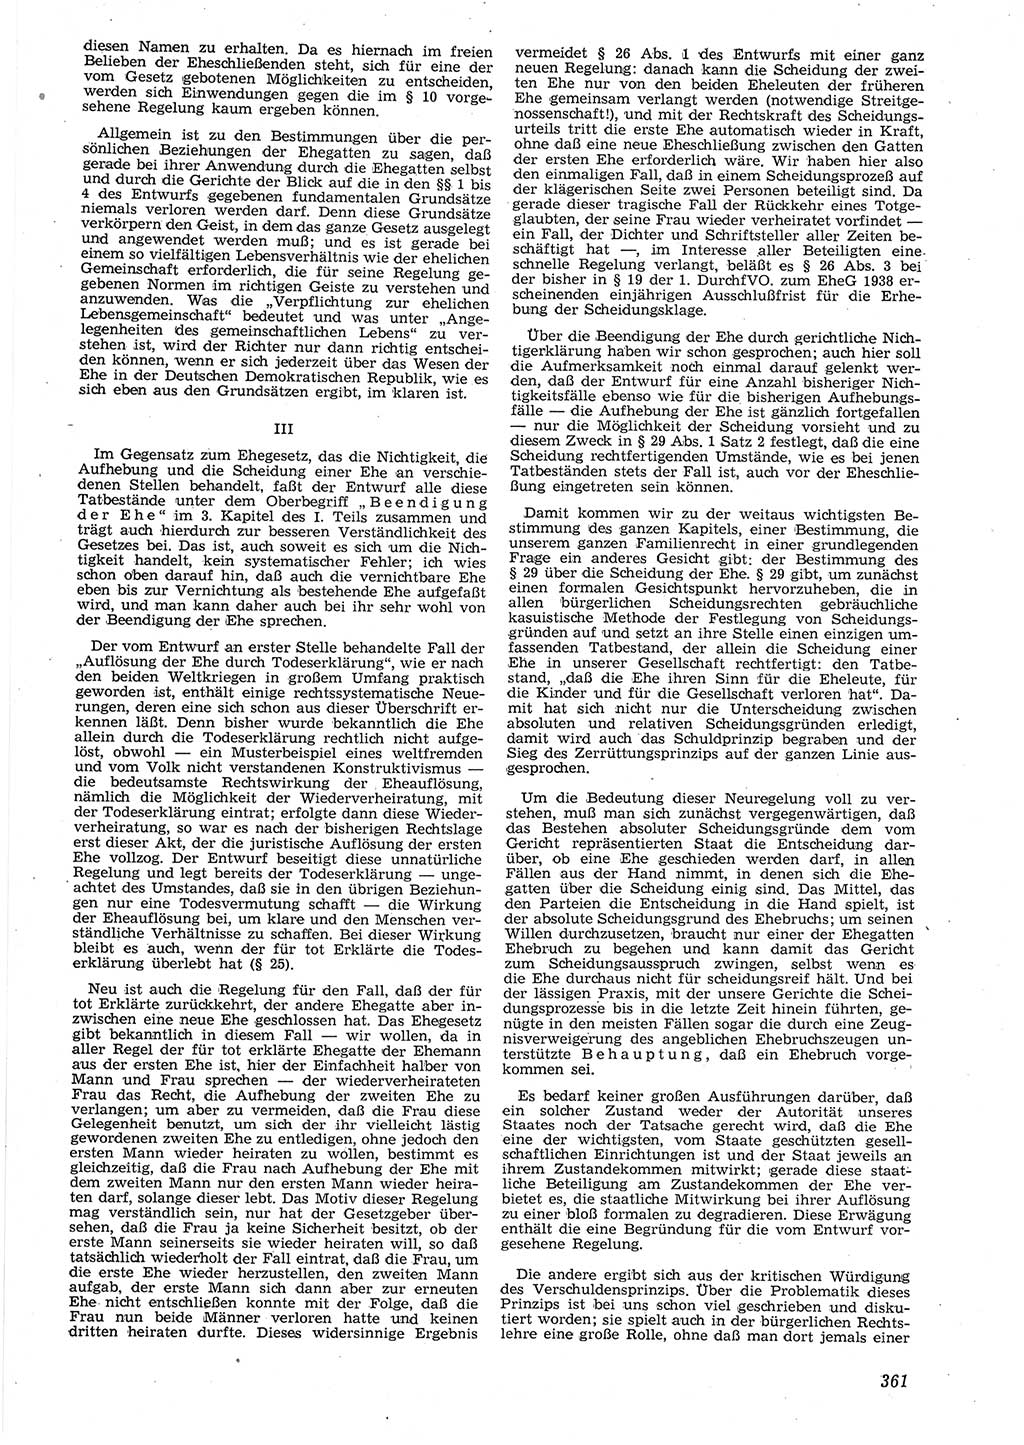 Neue Justiz (NJ), Zeitschrift für Recht und Rechtswissenschaft [Deutsche Demokratische Republik (DDR)], 8. Jahrgang 1954, Seite 361 (NJ DDR 1954, S. 361)